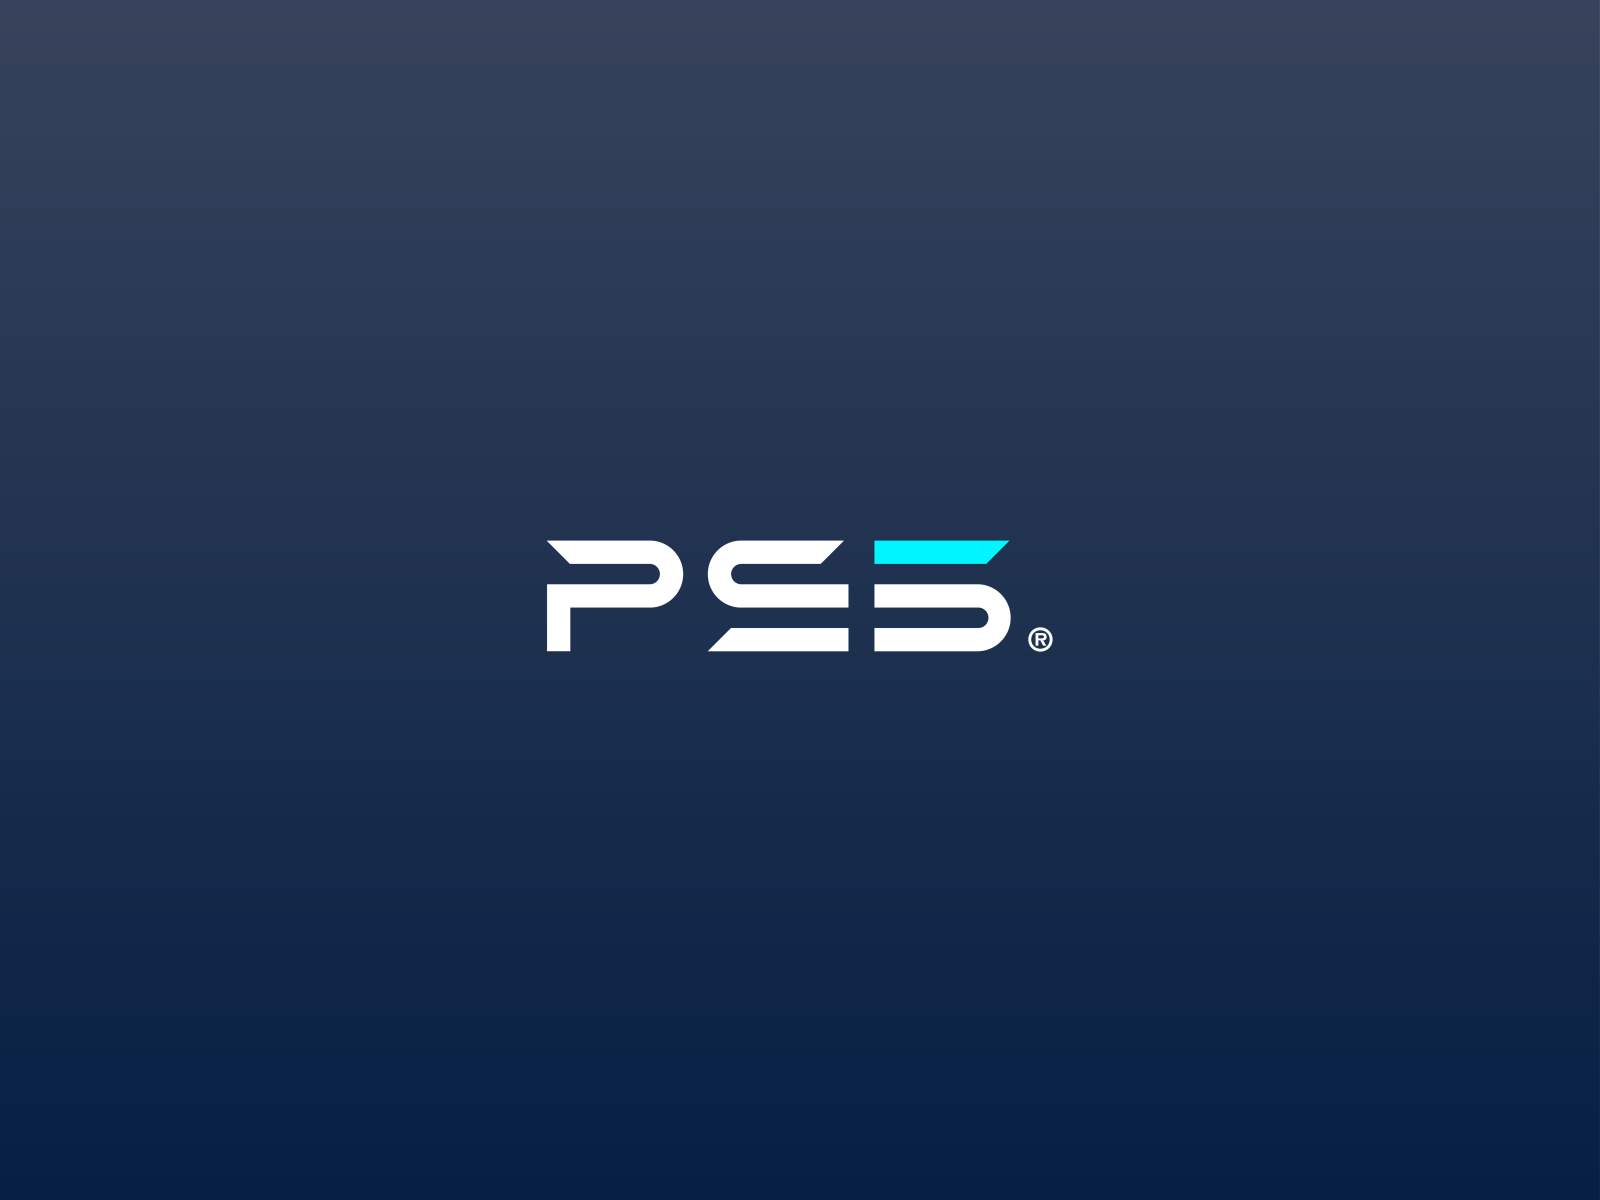 My shot at the PS5 logo